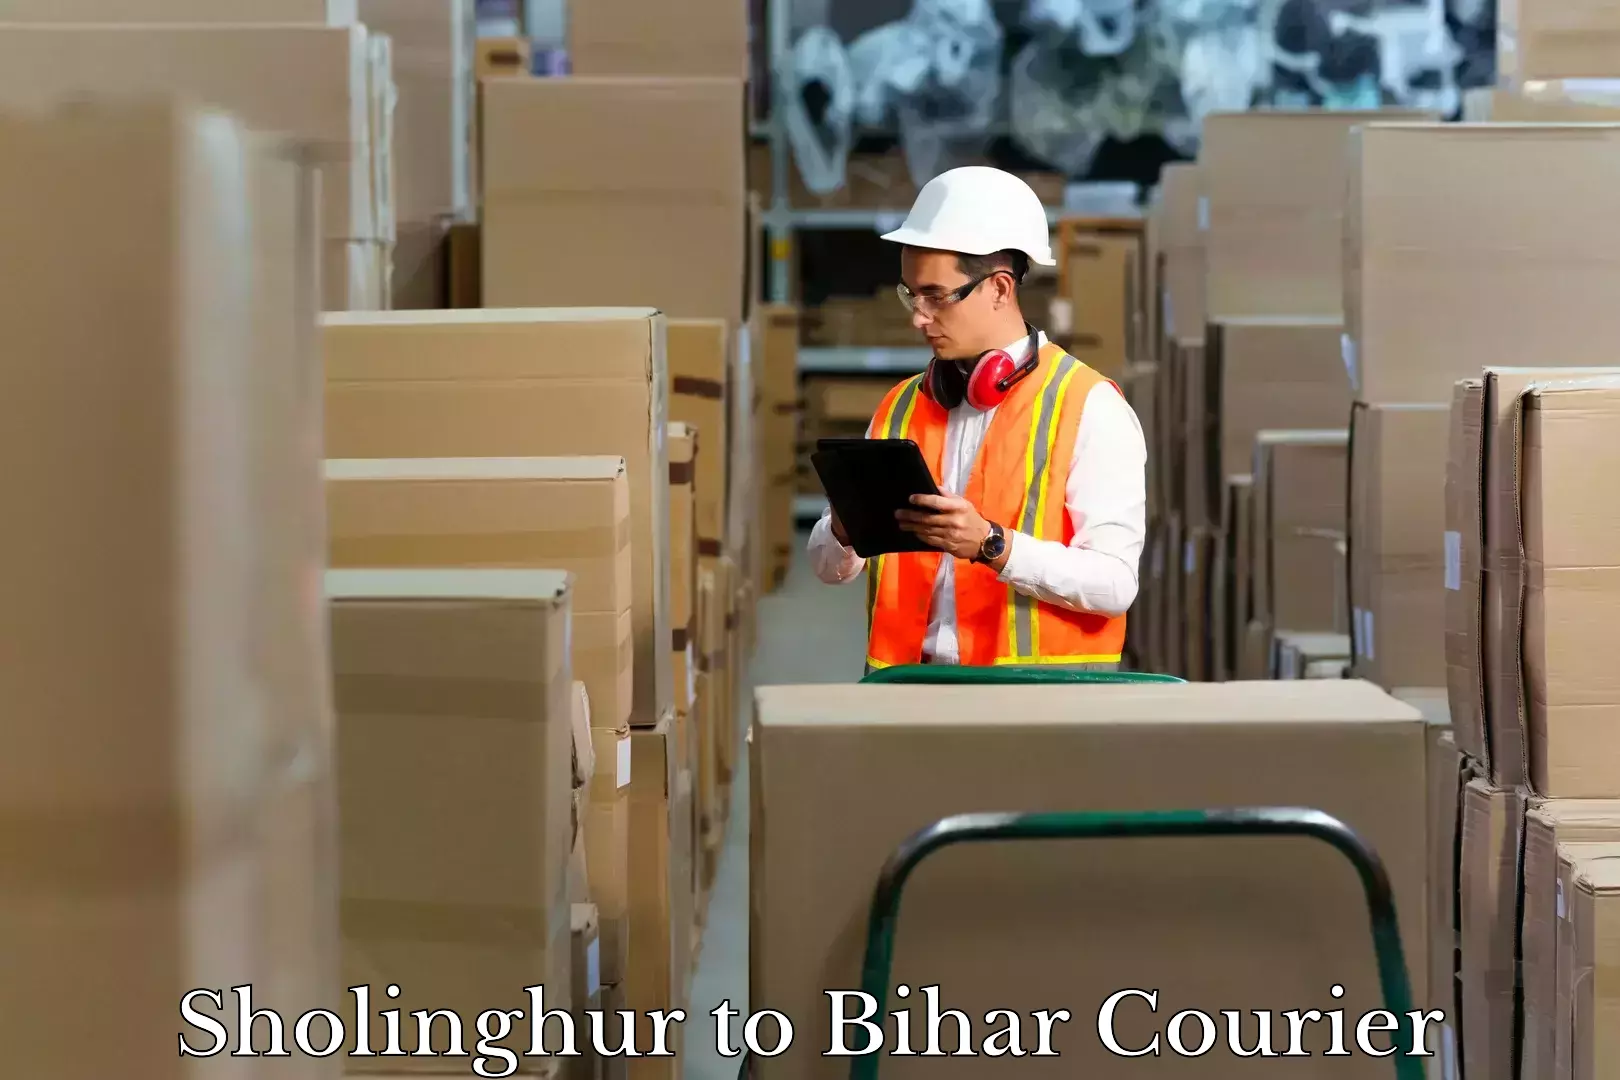 Door-to-door baggage service Sholinghur to Bihar